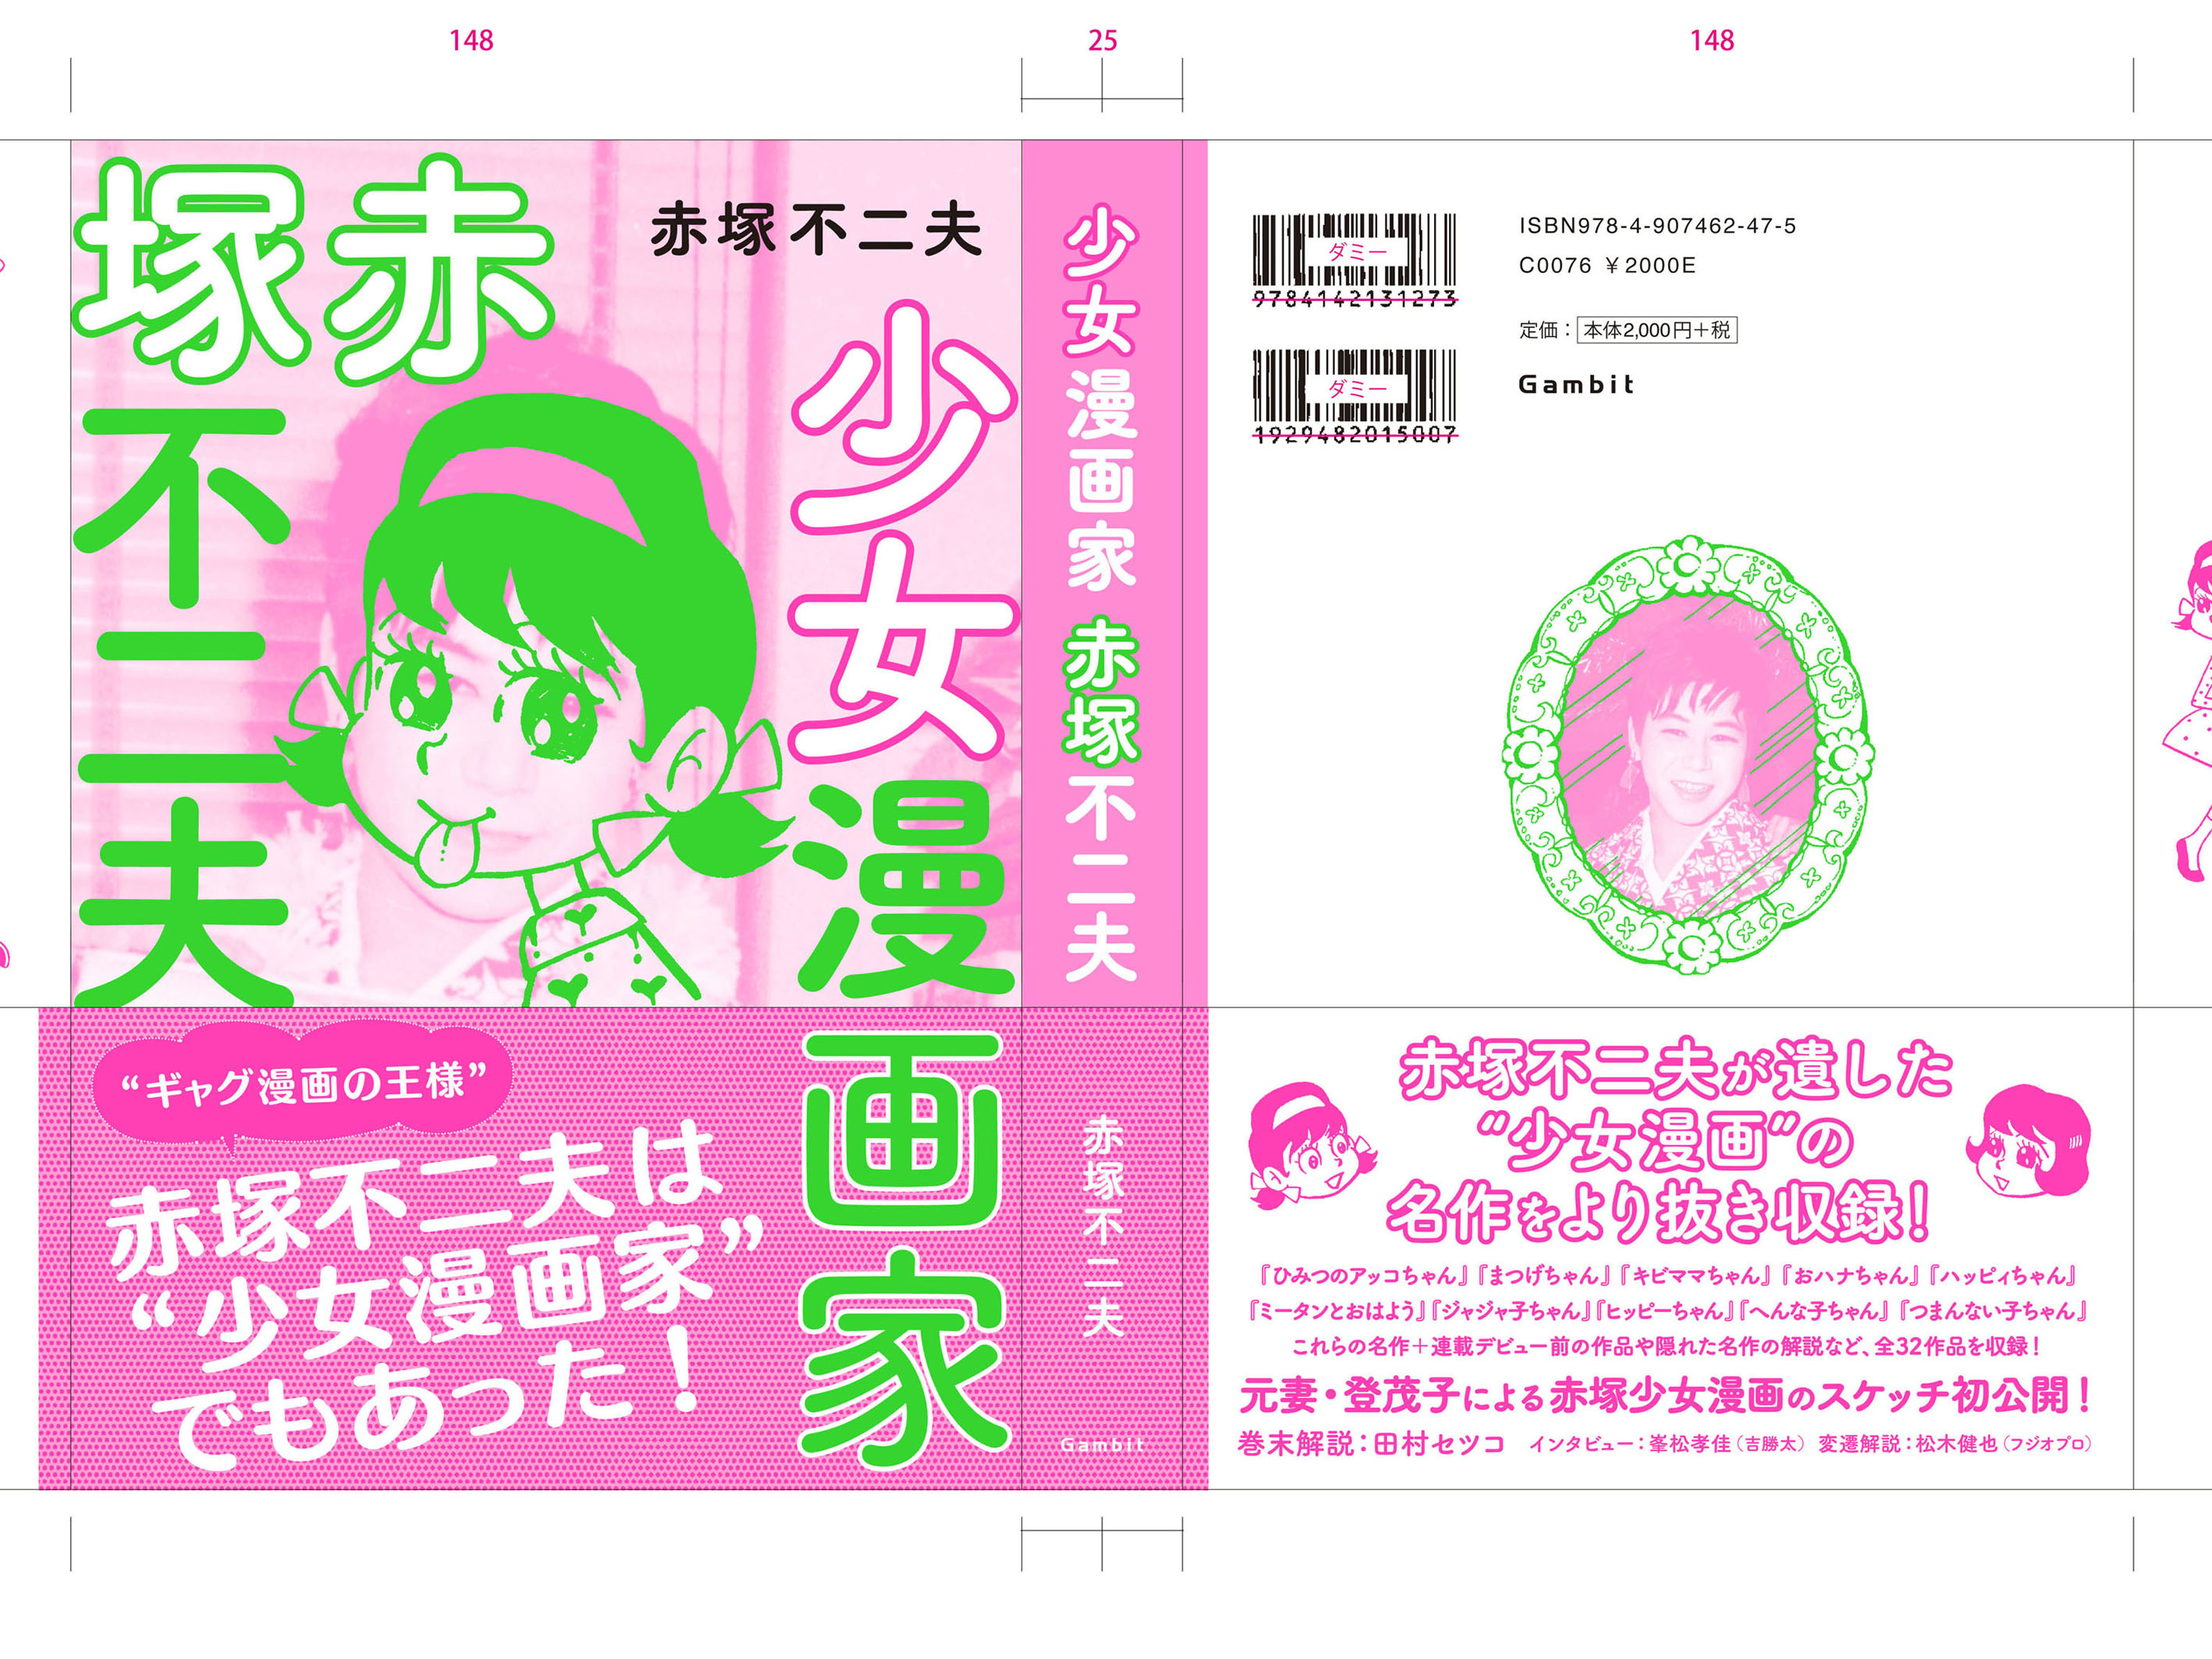 赤塚センセイの名作 少女漫画 をまとめたアンソロジー本企画が進行中 スタッフブログ